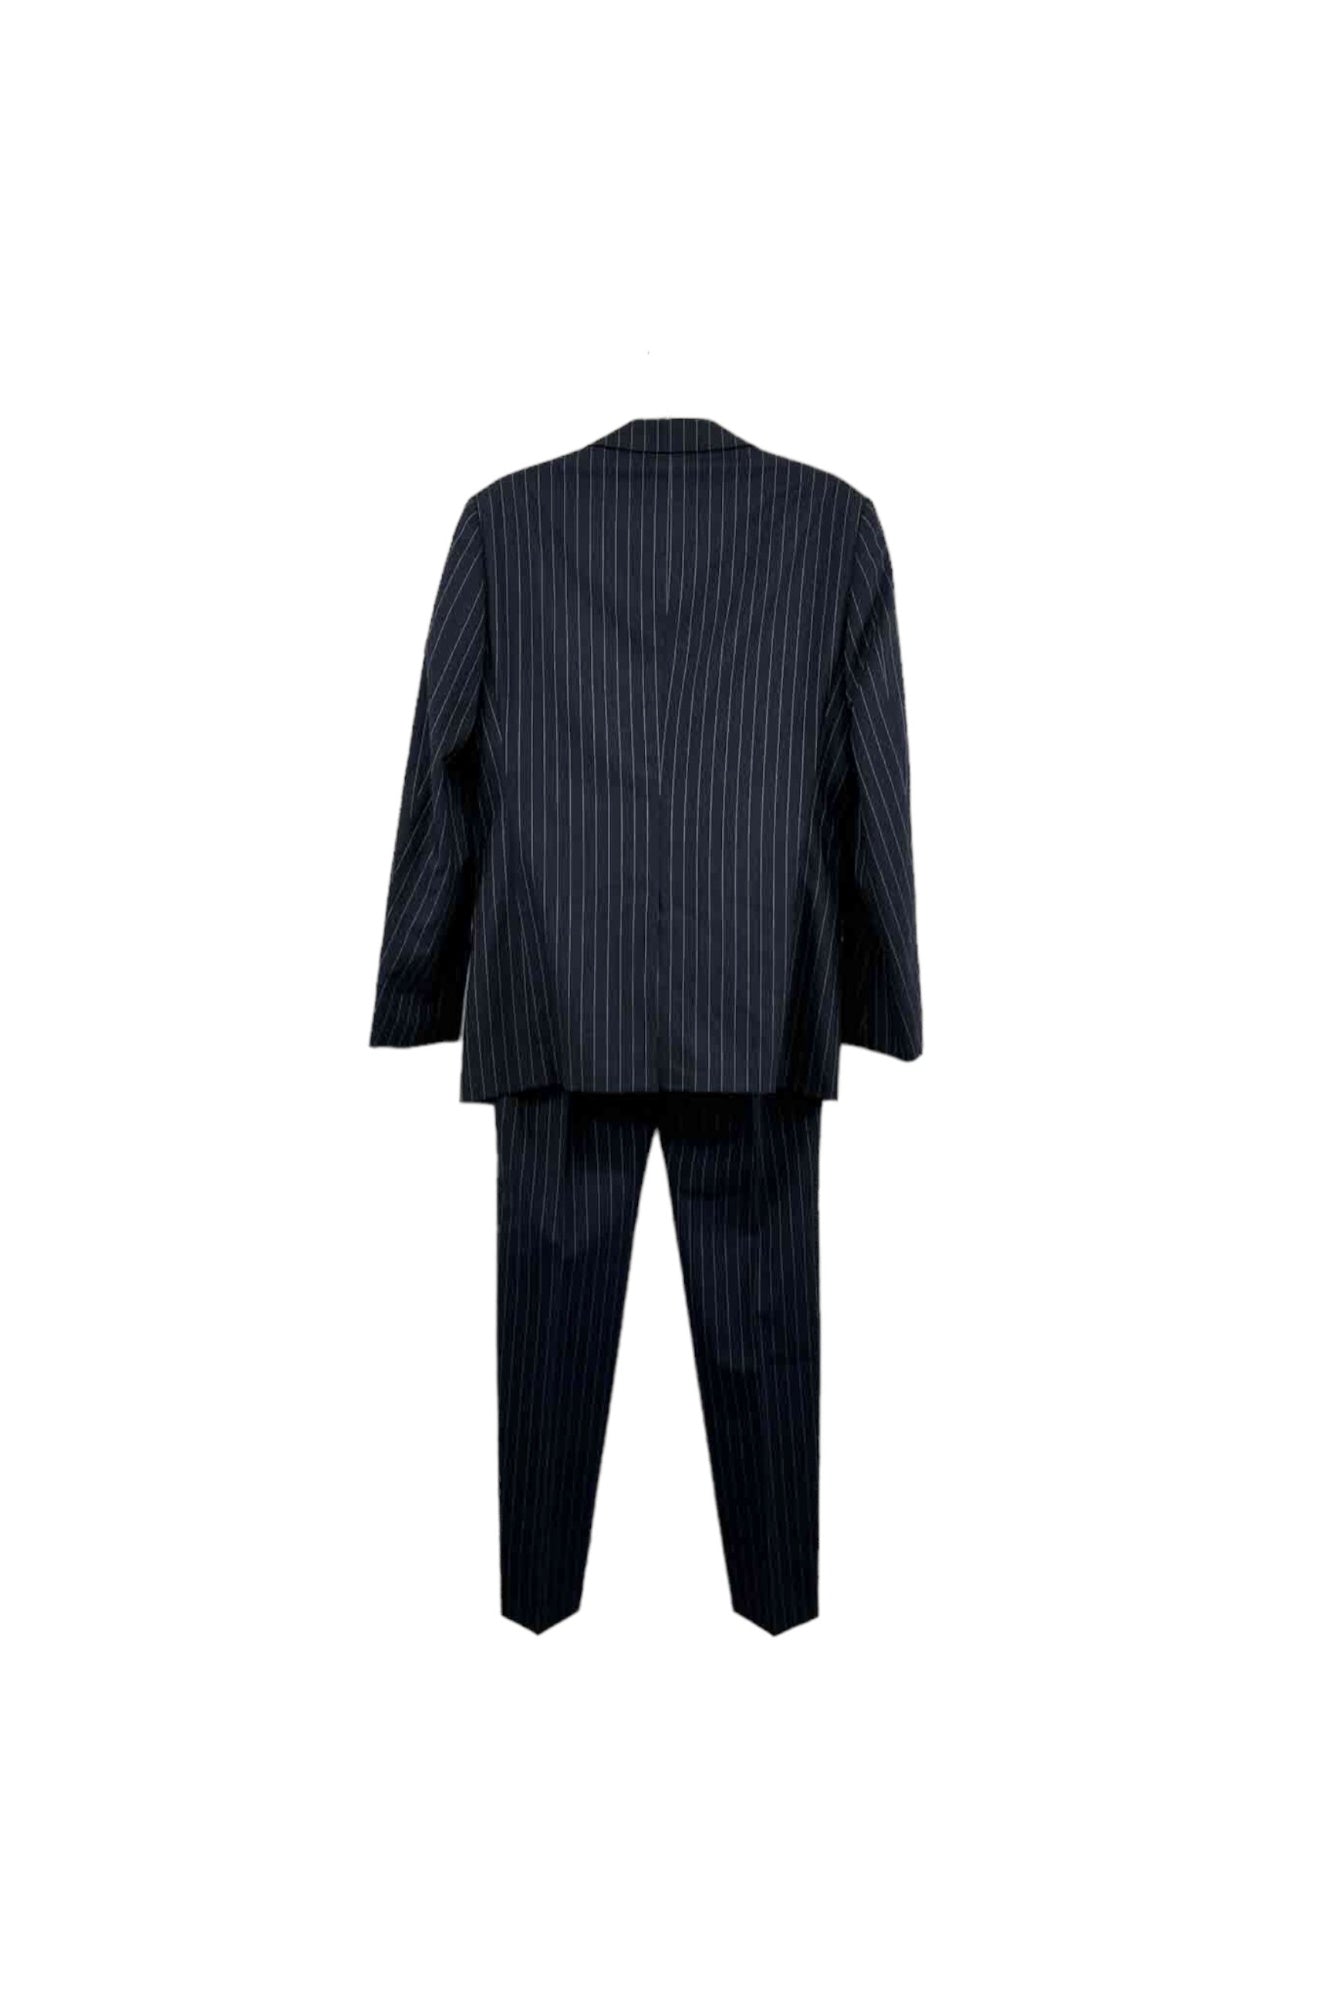 HILTON blue striped suit